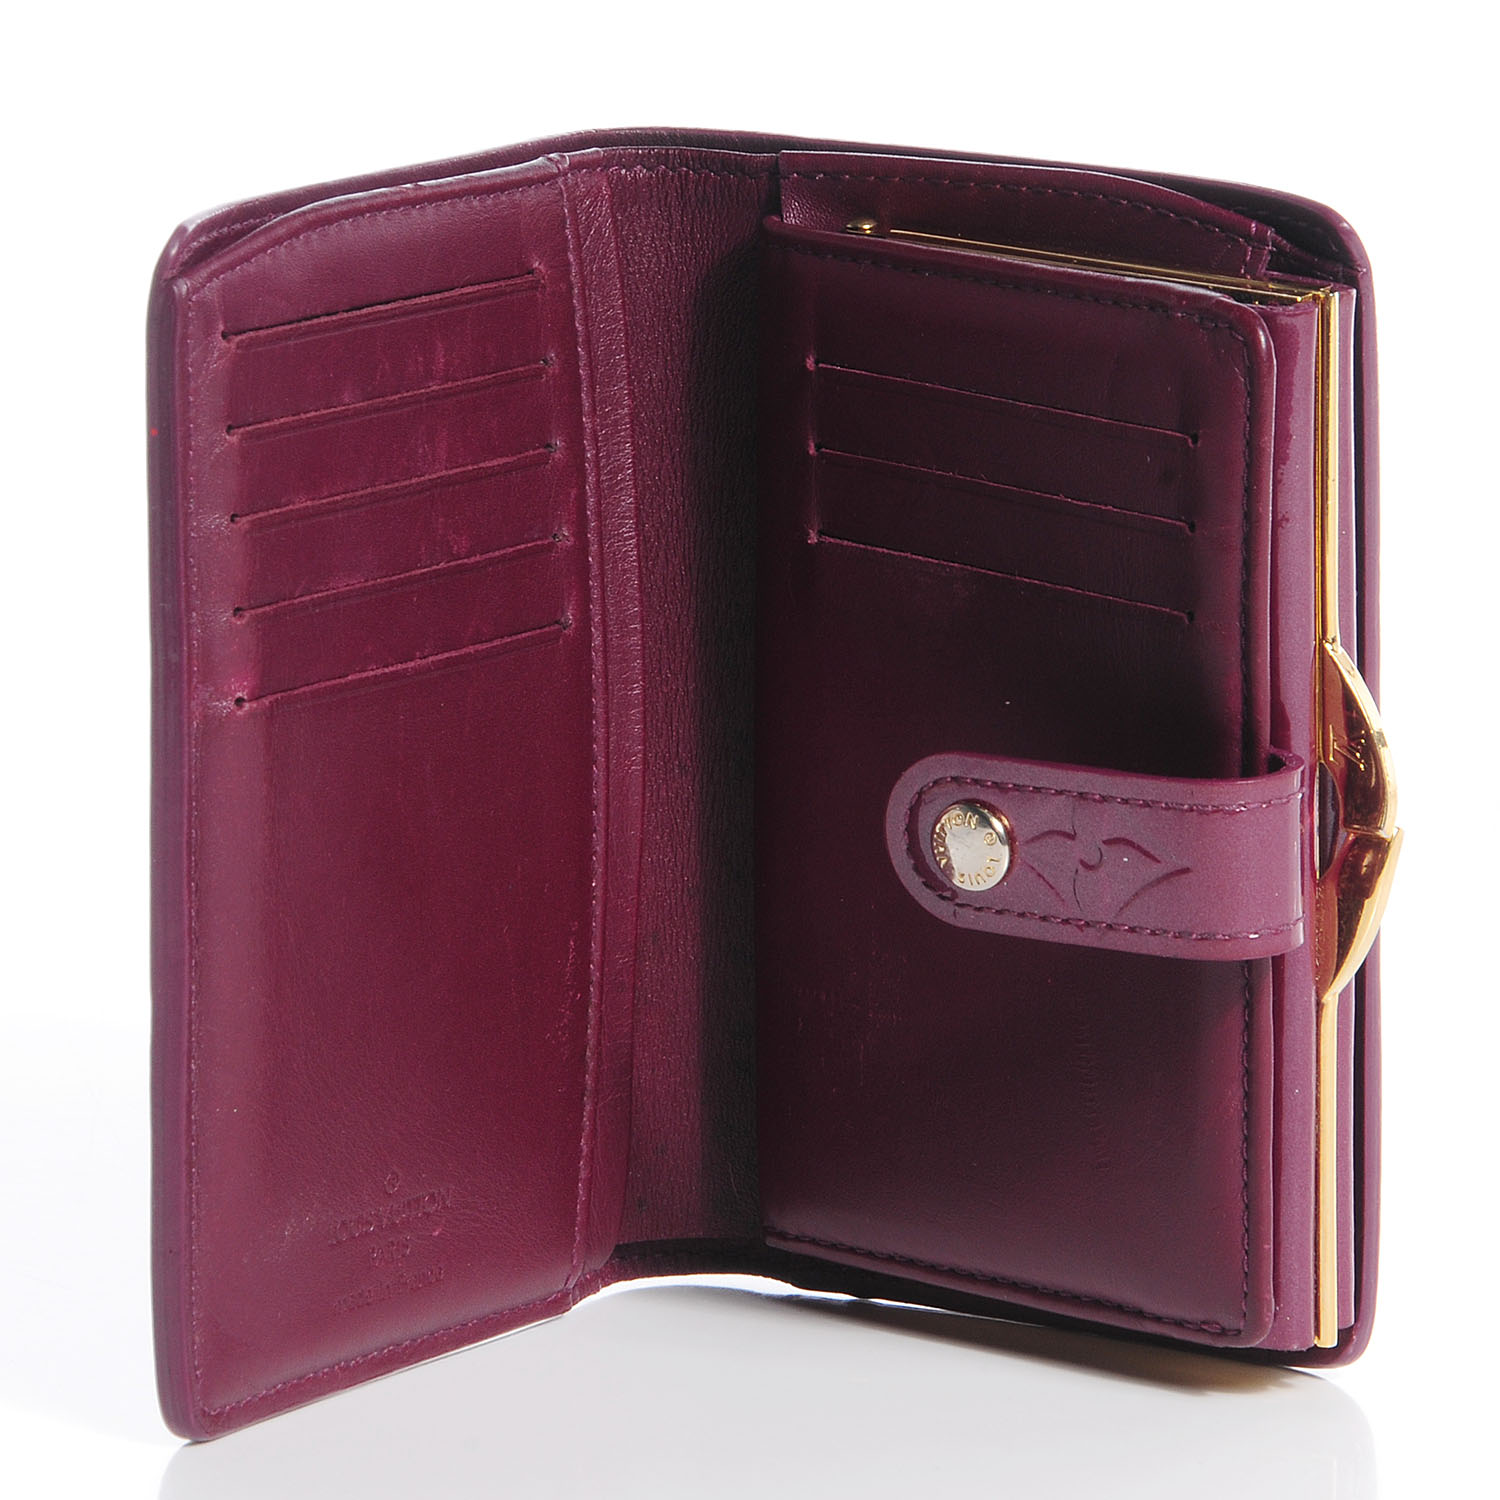 LOUIS VUITTON Vernis French Purse Wallet Violette 79157